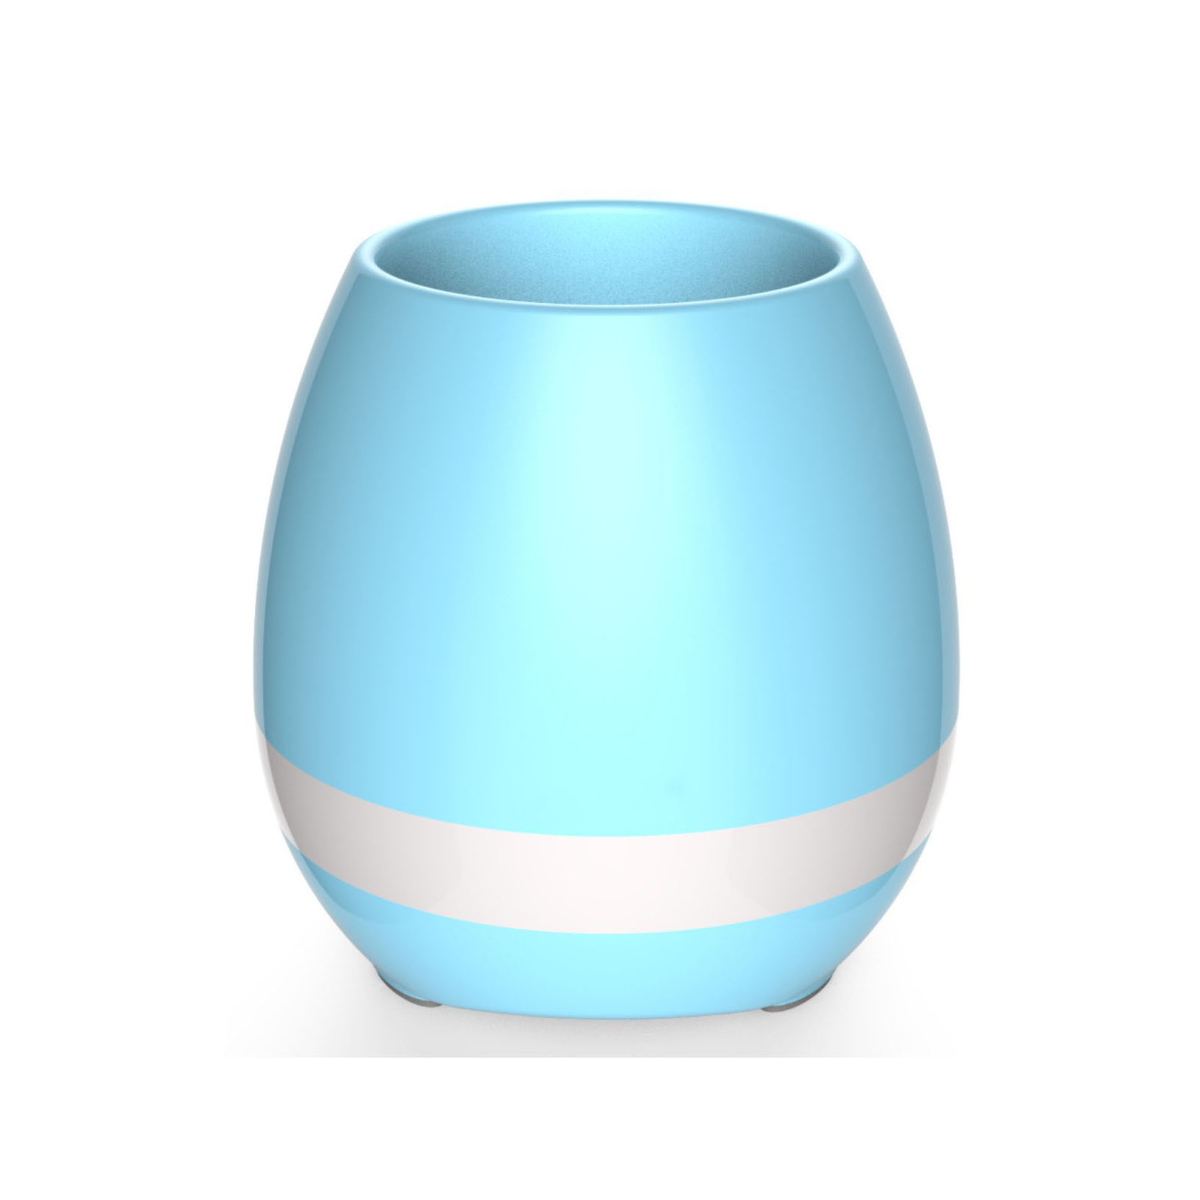 ENBAOXIN Bluetooth Nachtlicht Musik Blumentopf, Blau Farben Modus Lautsprecher-Smart Bluetooth-Lautsprecher, 7